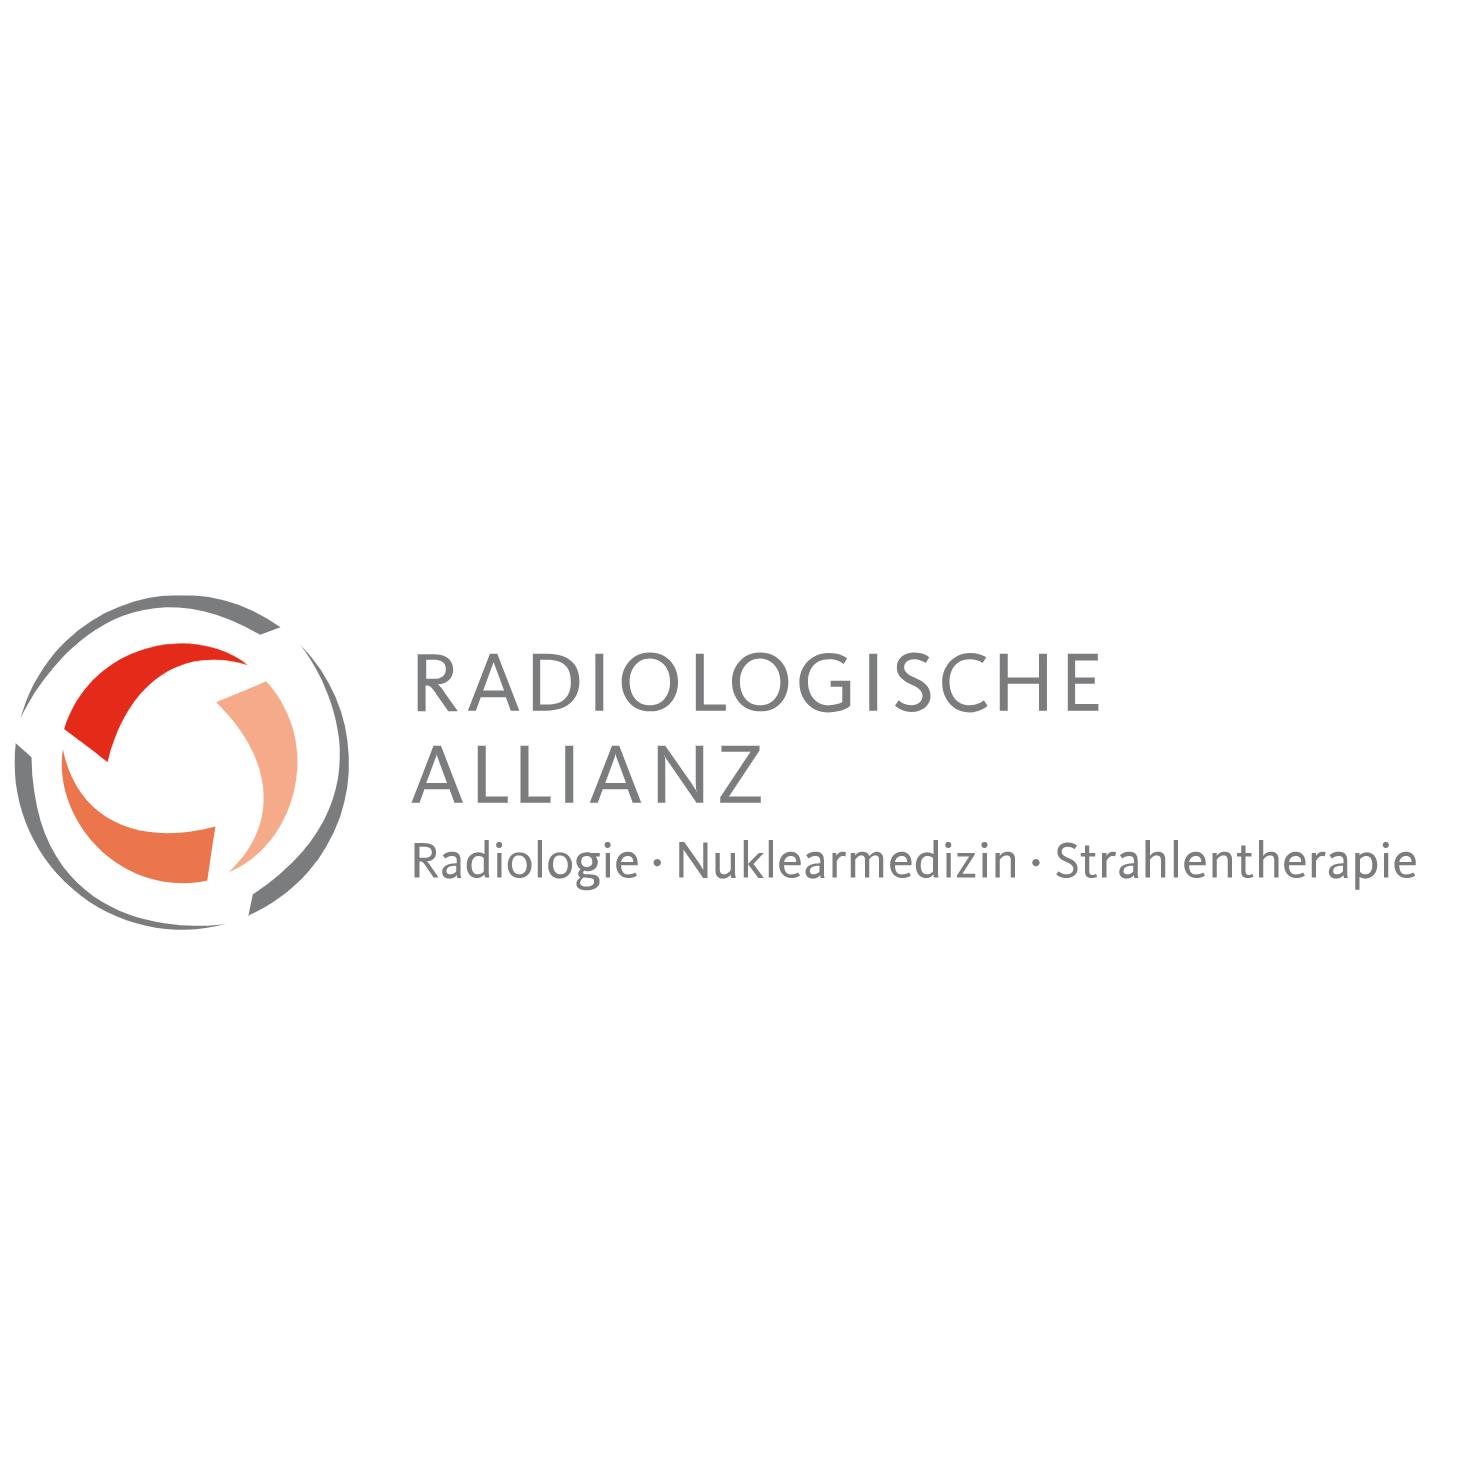 Radiologische Allianz an der ENDO-Klinik  